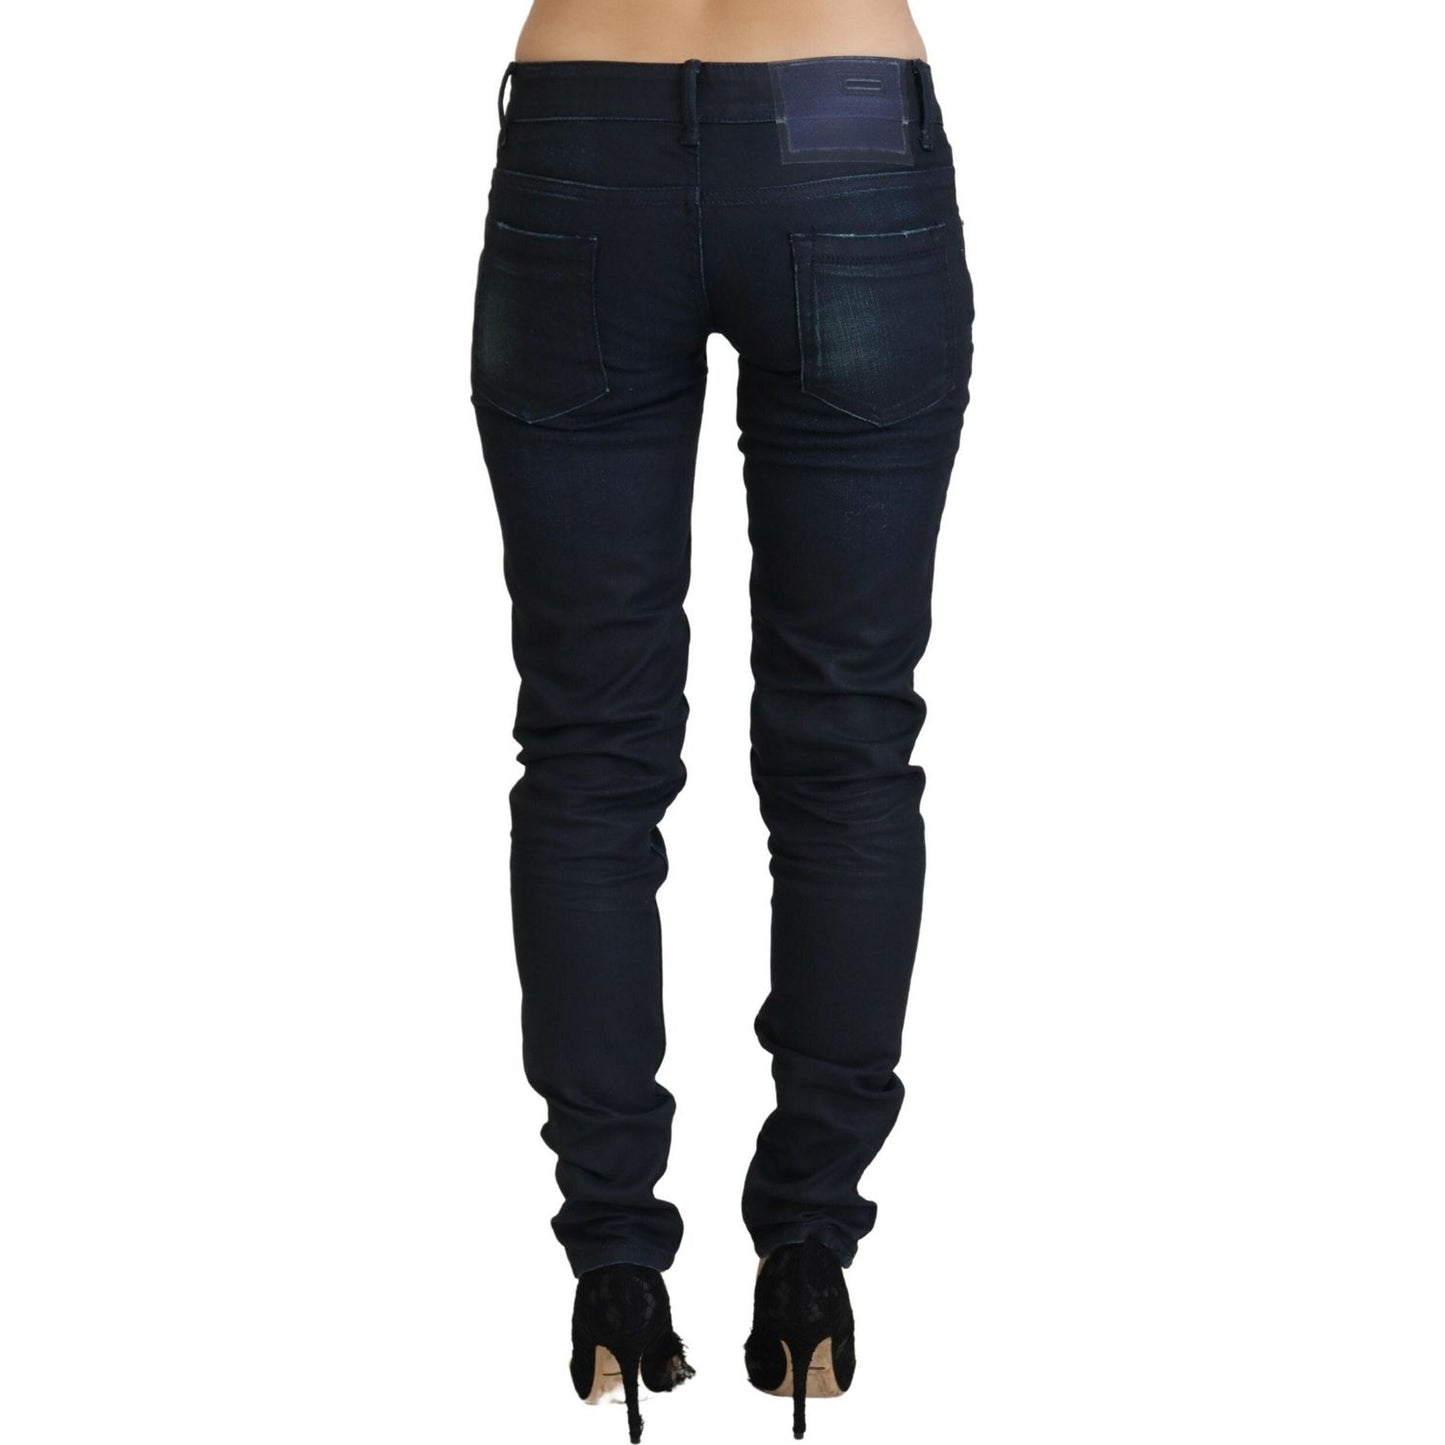 Acht Slim Fit Cotton Denim Jeans blue-low-waist-slim-fit-women-denim-jeans-1